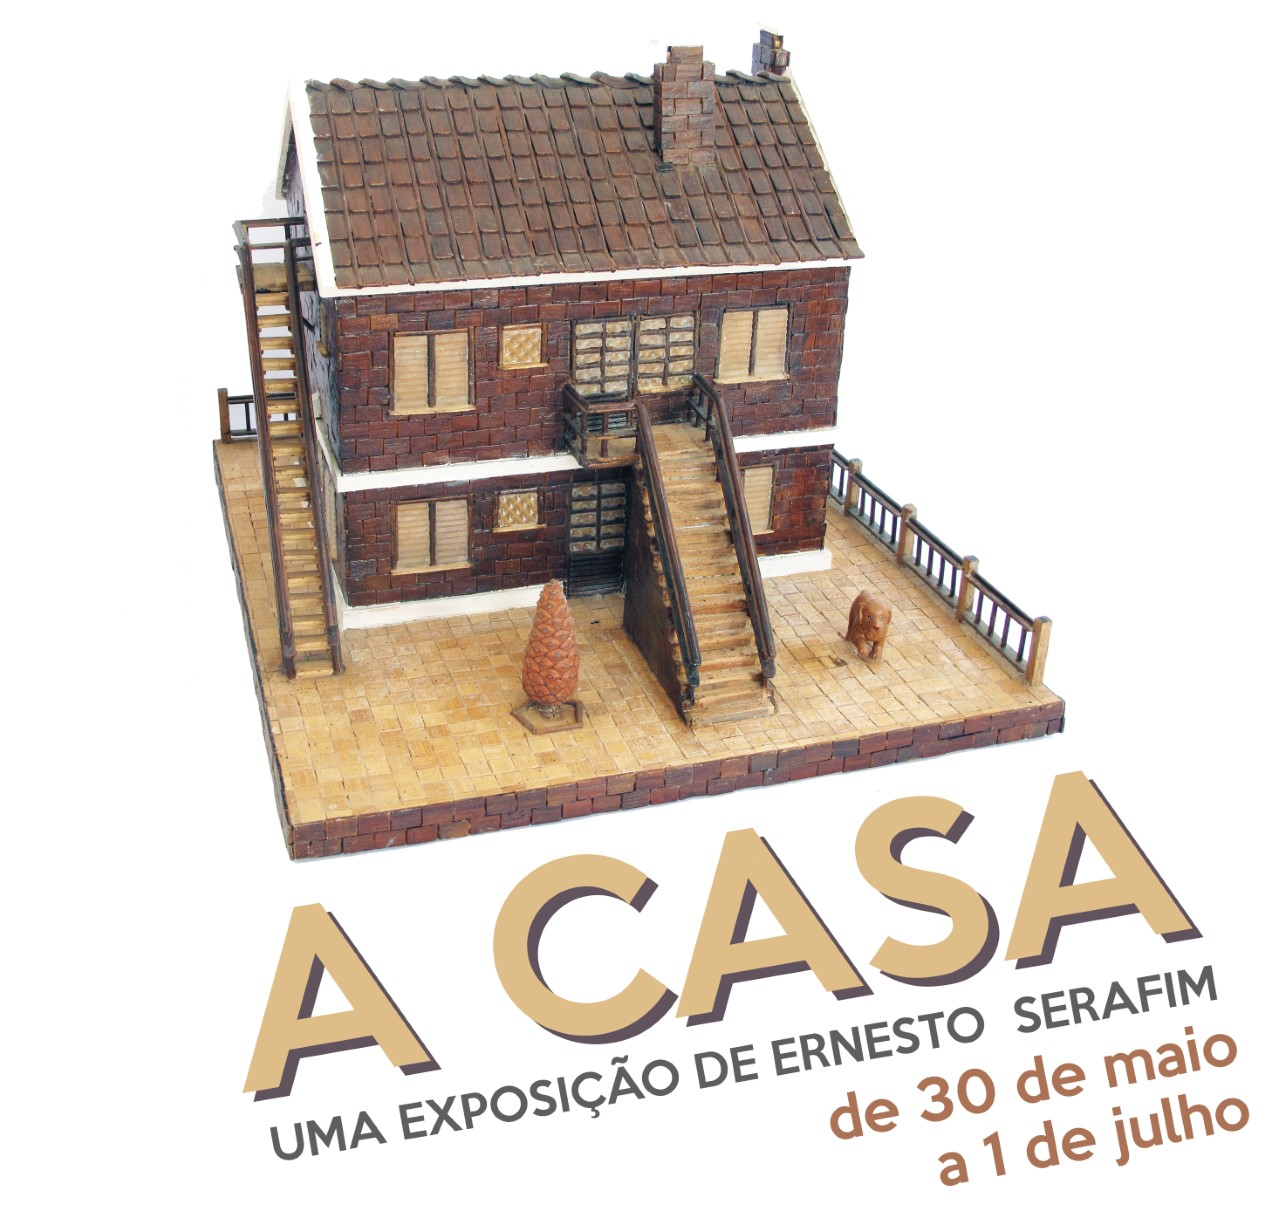 A Casa enquanto Corpo - Centro de Promoção Social PRODAC - Marvila Lisboa I 28 Junho